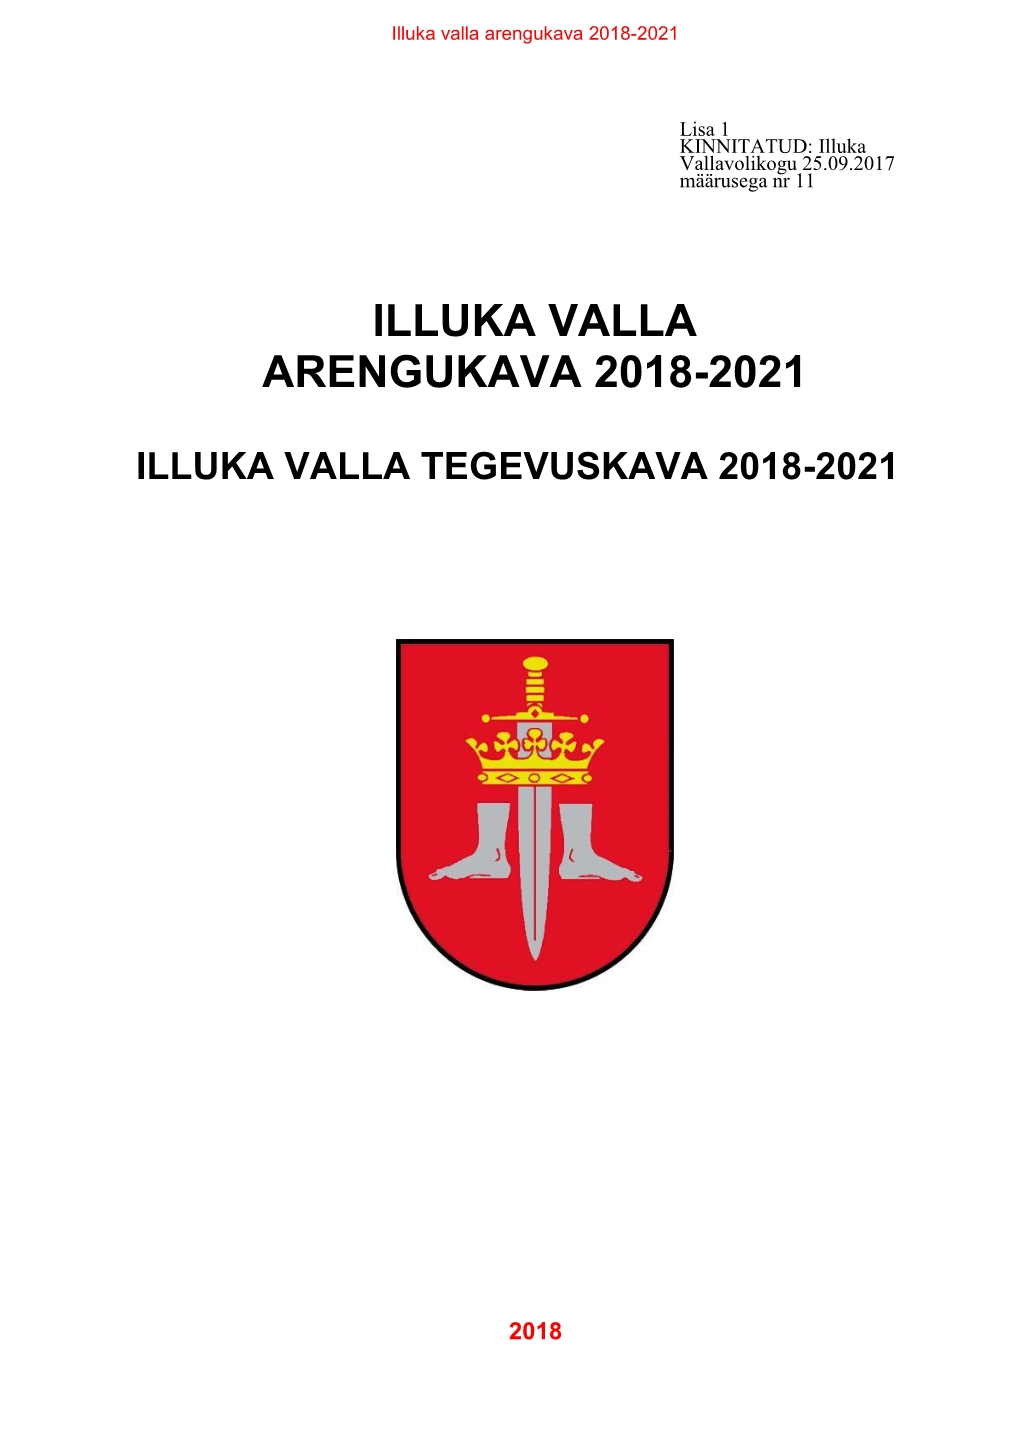 Illuka Valla Arengukava 2018-2021